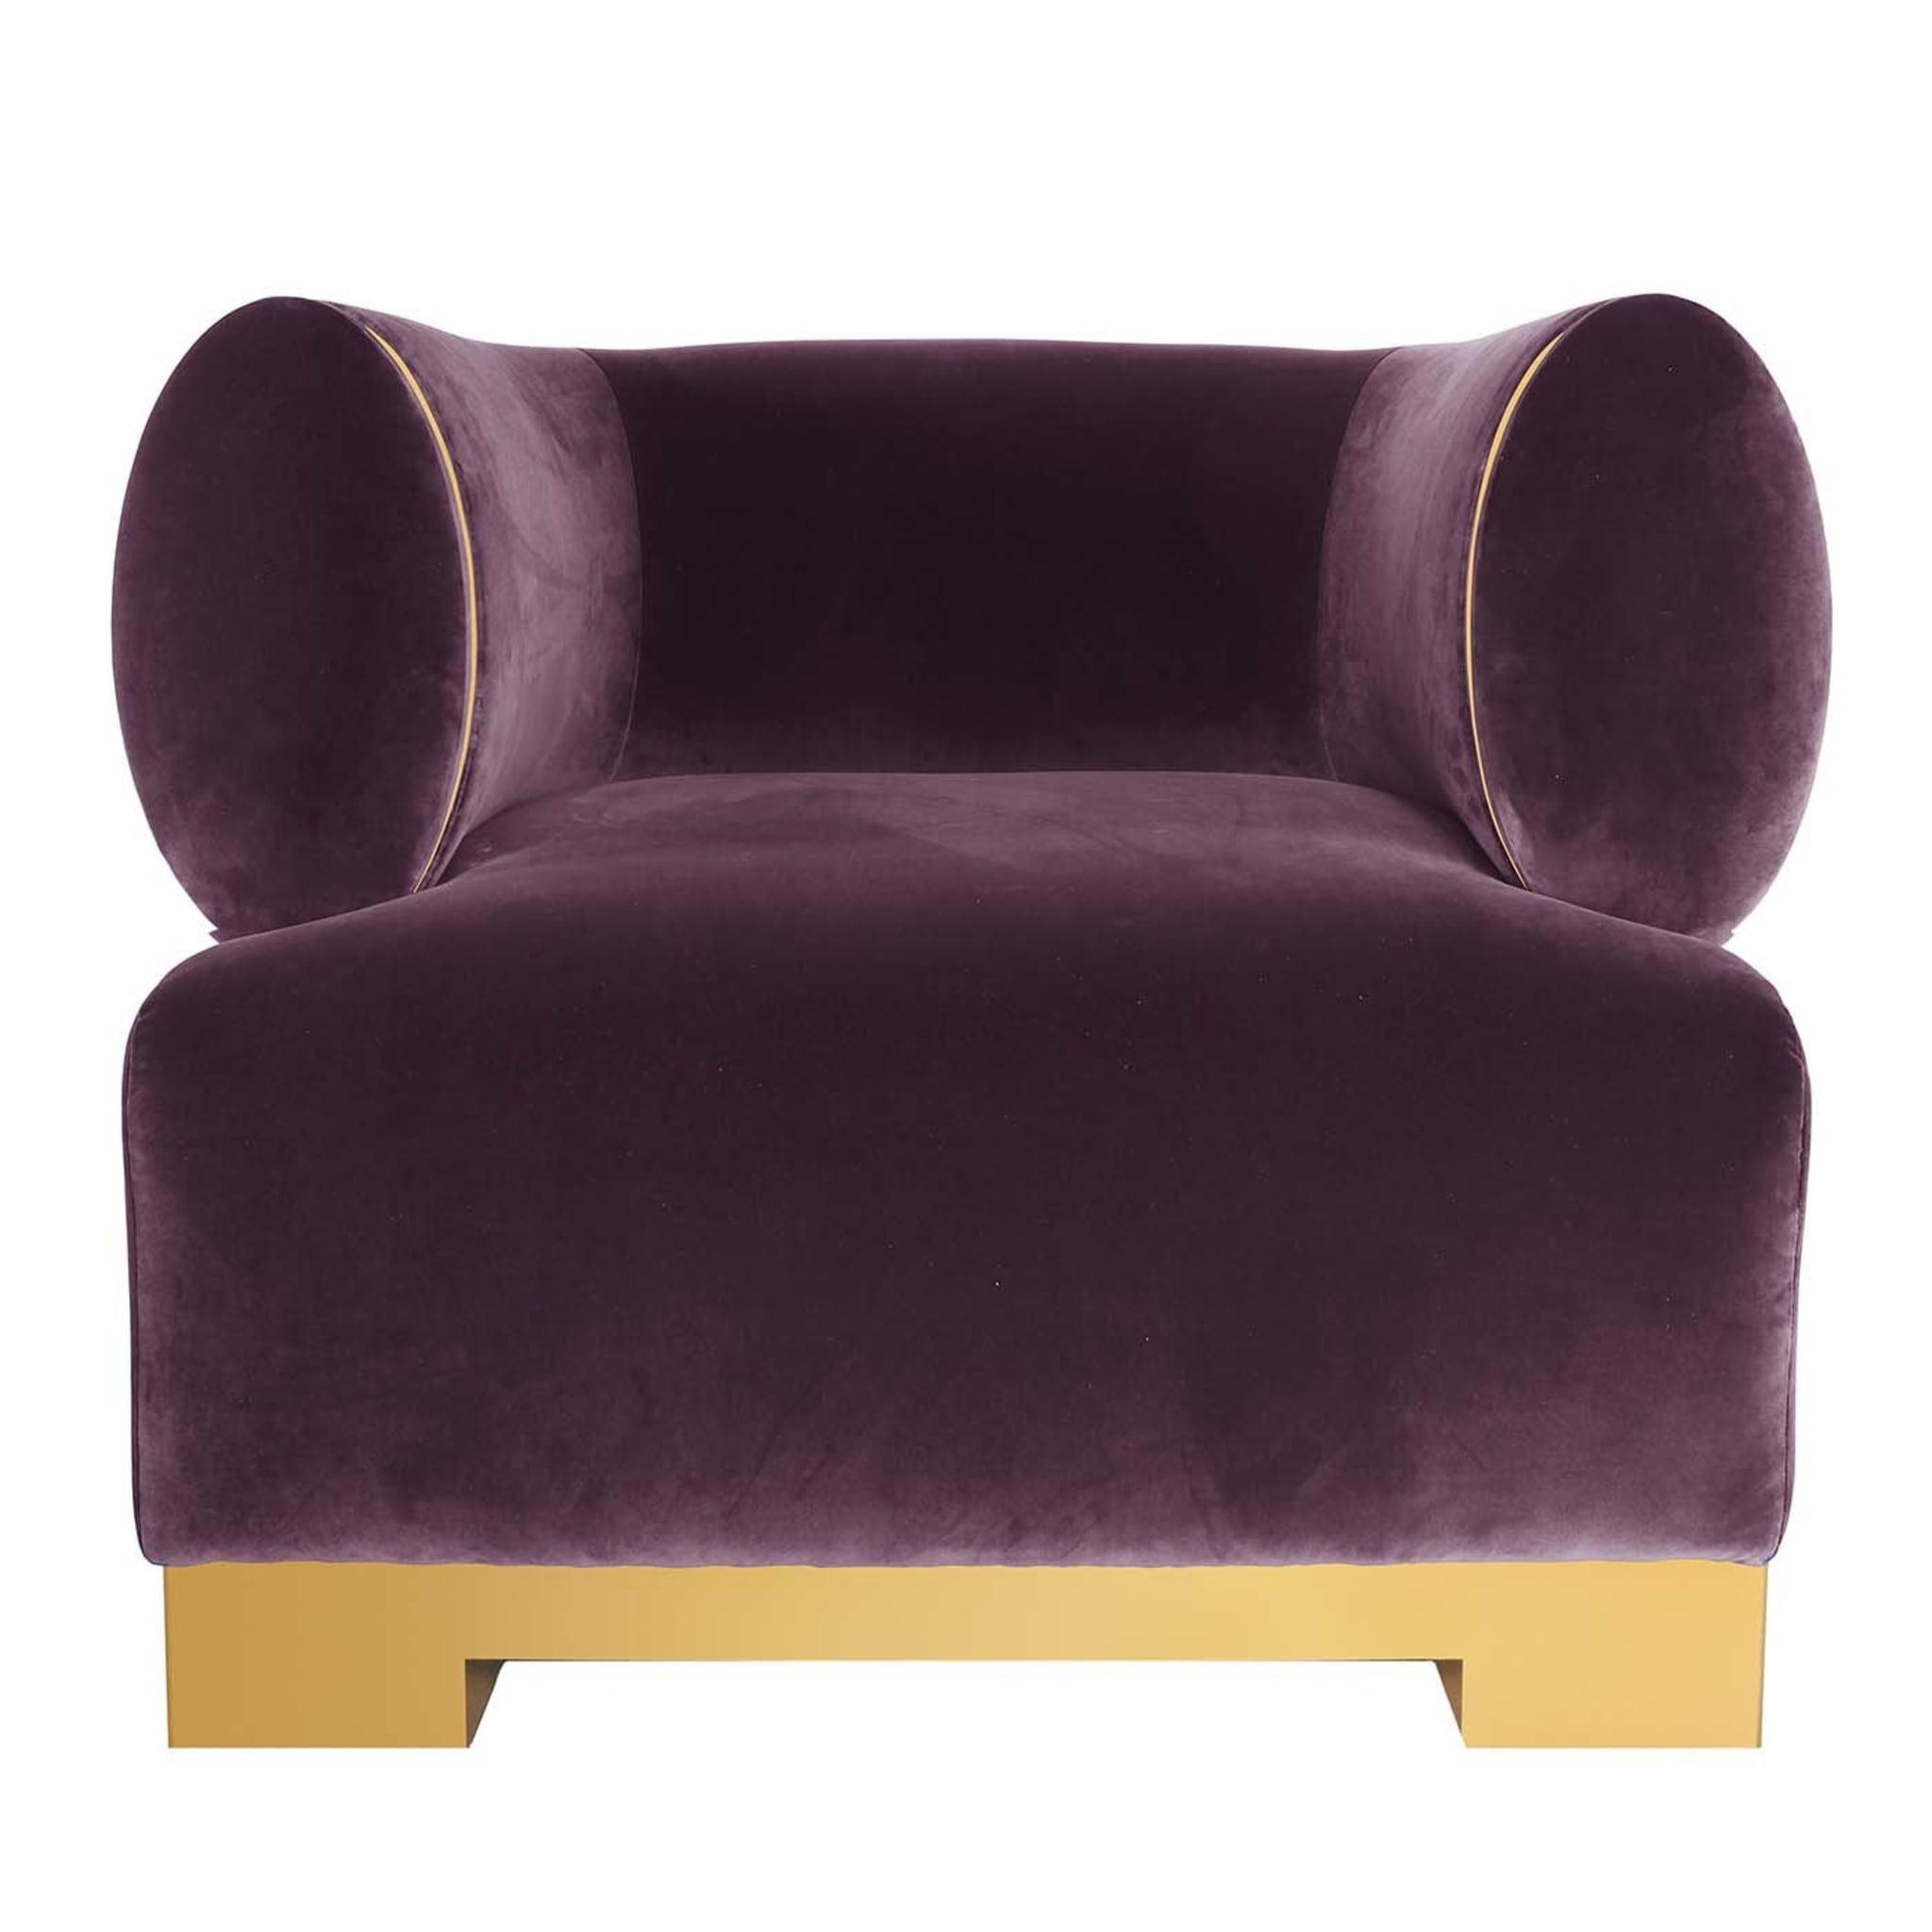 Dorado Purple Armchair  - Main view